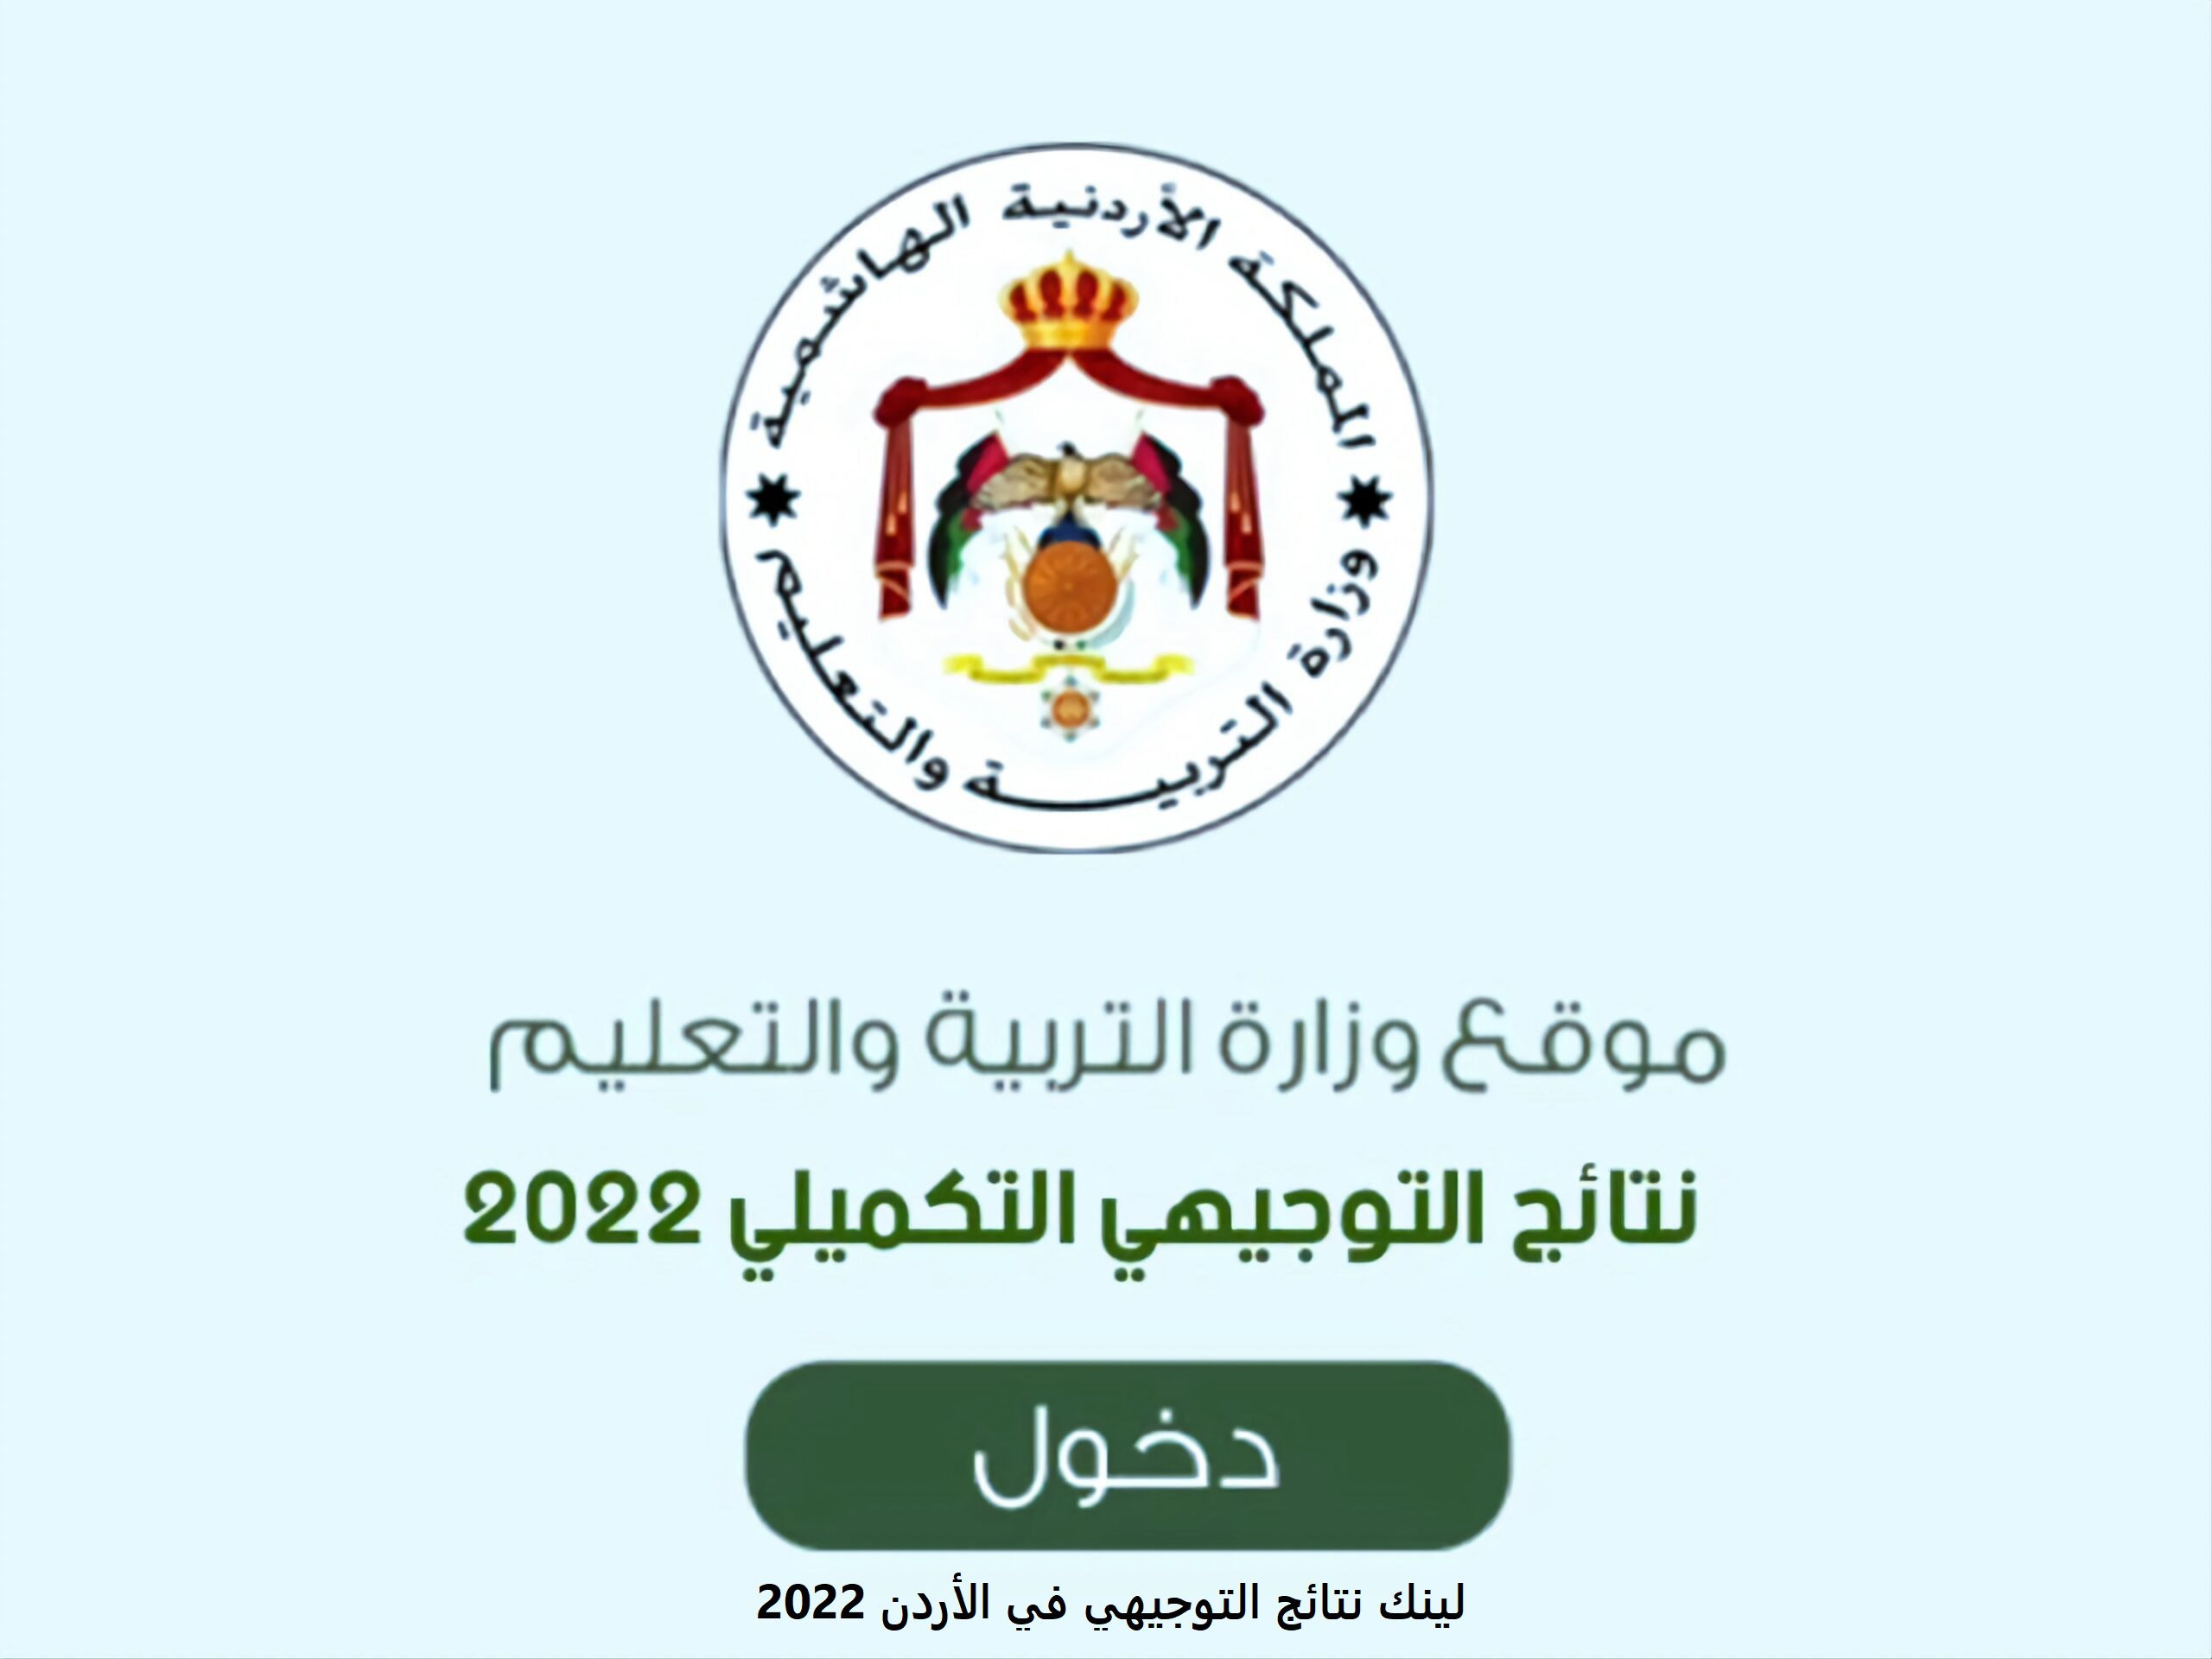 نتائج التوجيهي التكميلي 2022 800x600 1 scaled 1 - مدونة التقنية العربية